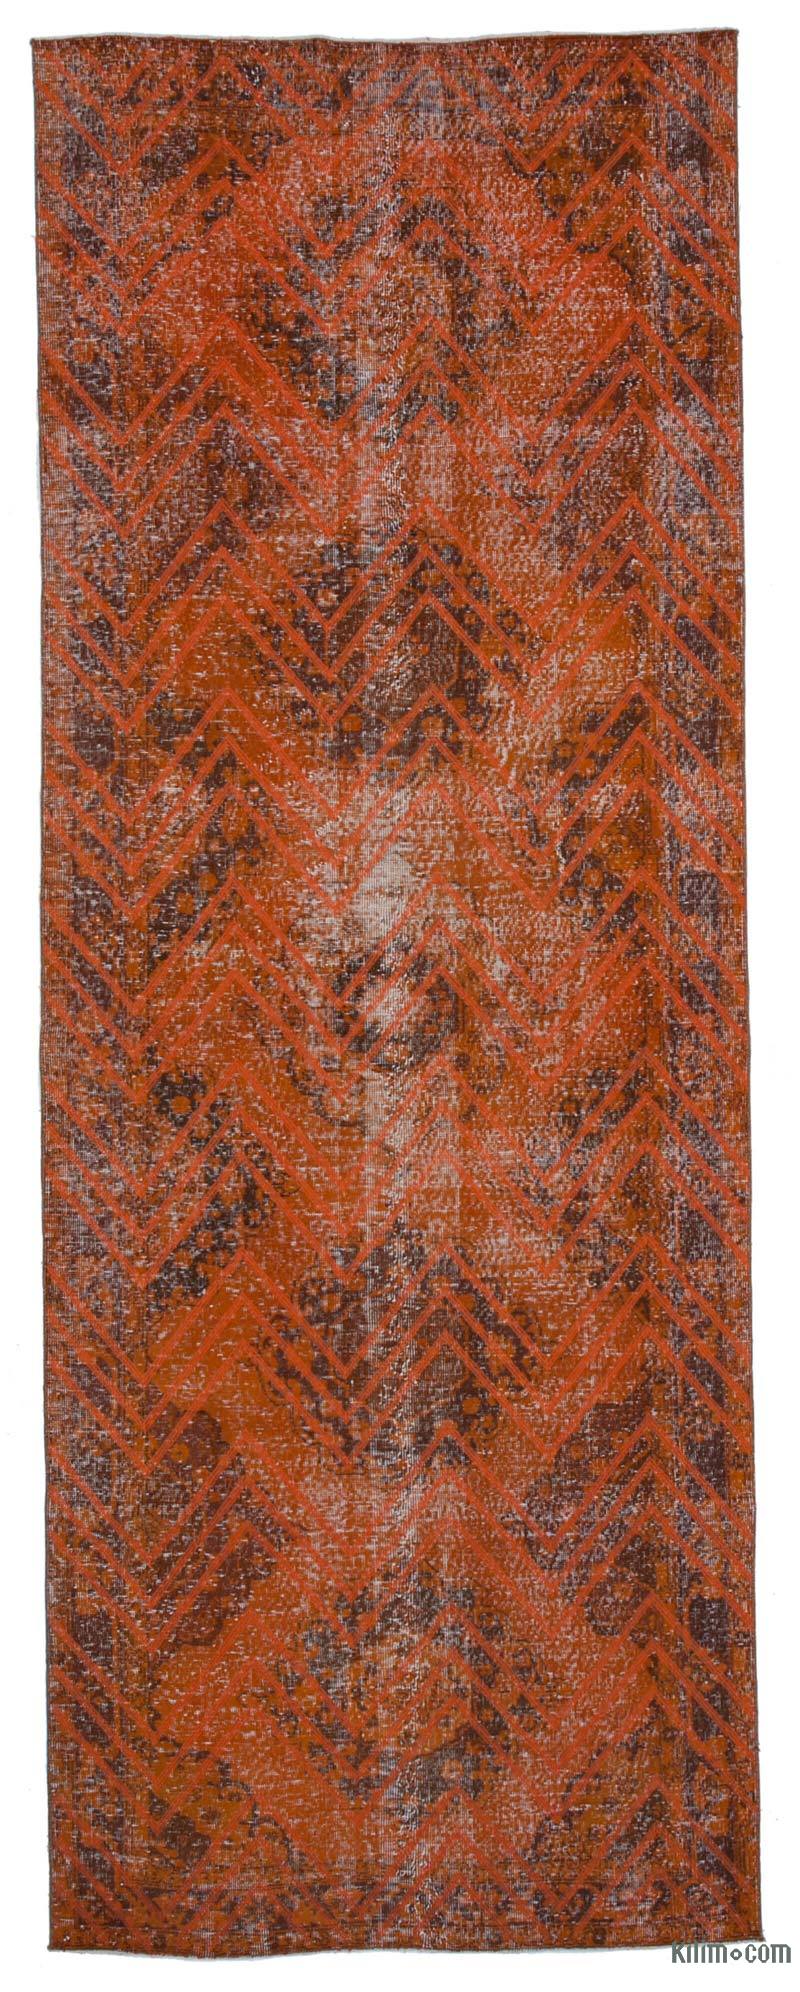 Turuncu İşlemeli ve Boyalı El Dokuma Vintage Halı - 138 cm x 382 cm - K0038643